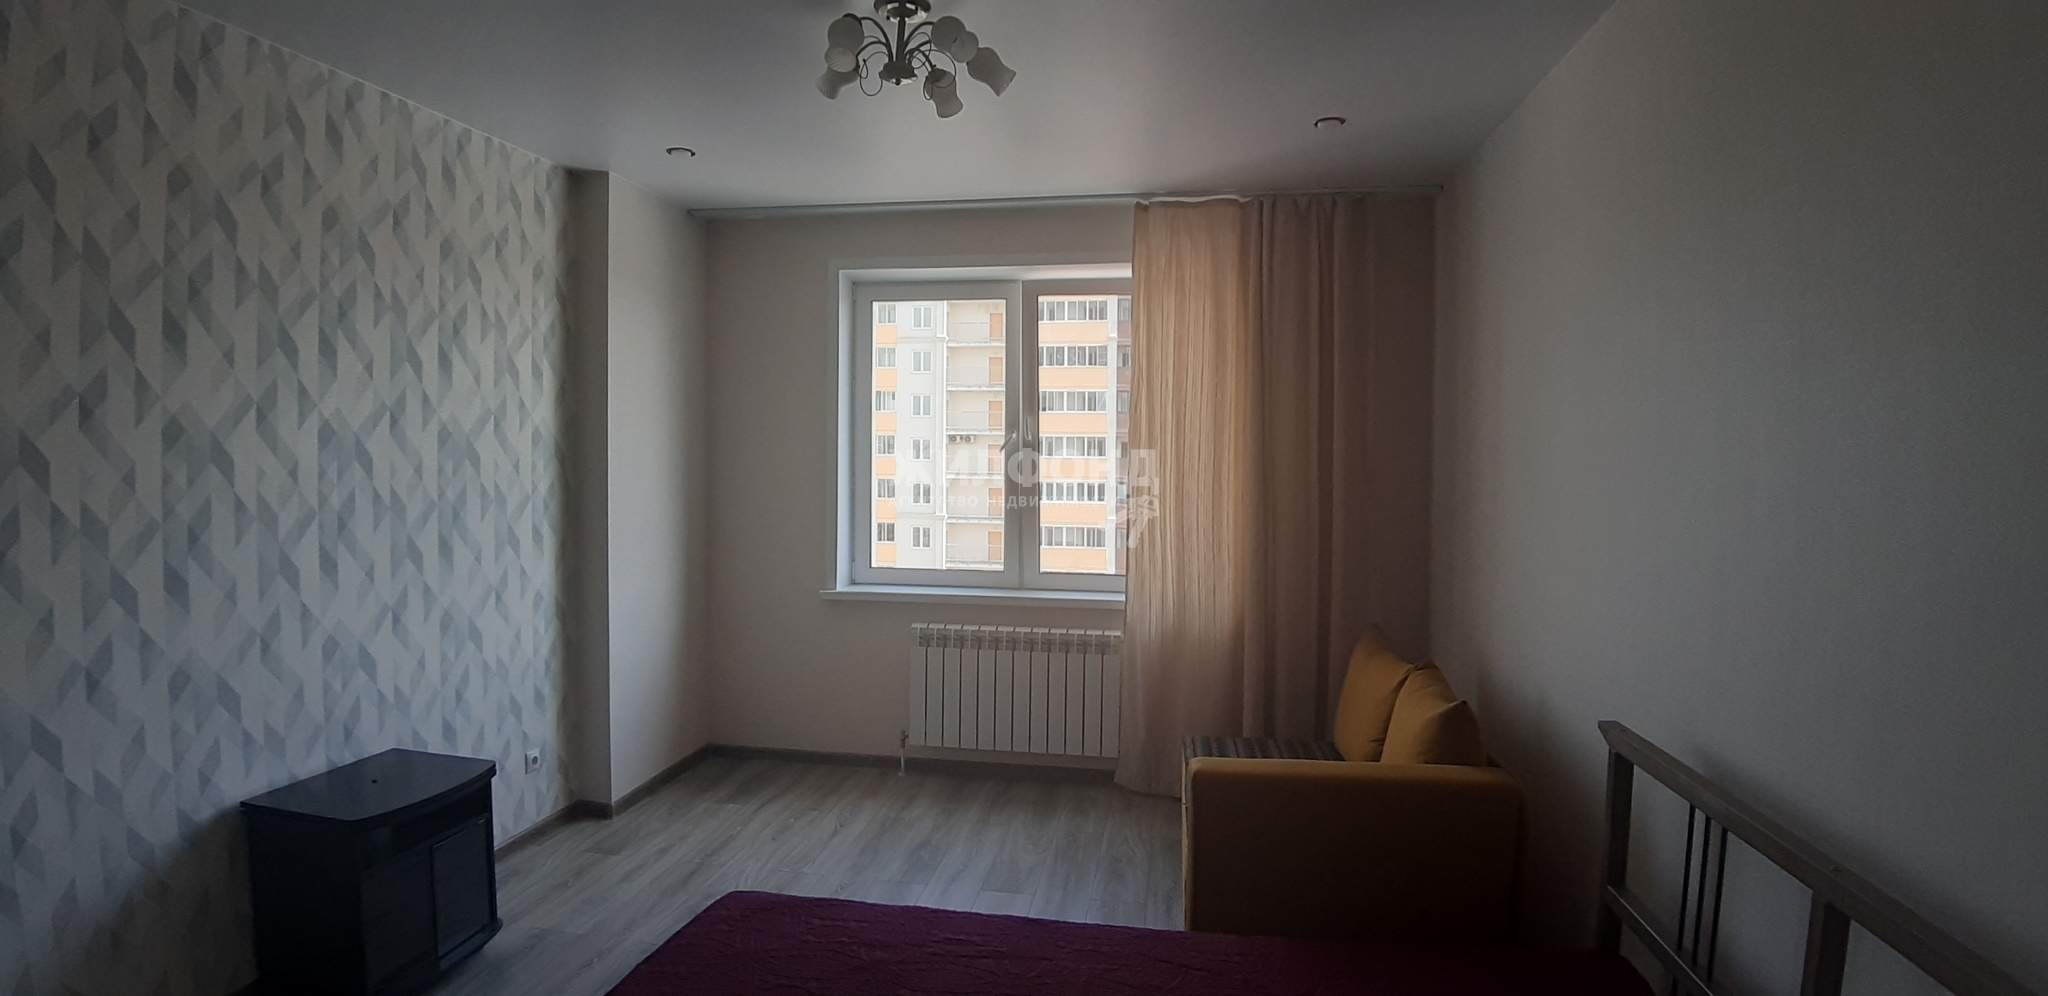 Аренда 1-комнатной квартиры, Новосибирск, Писарева улица,  д.125